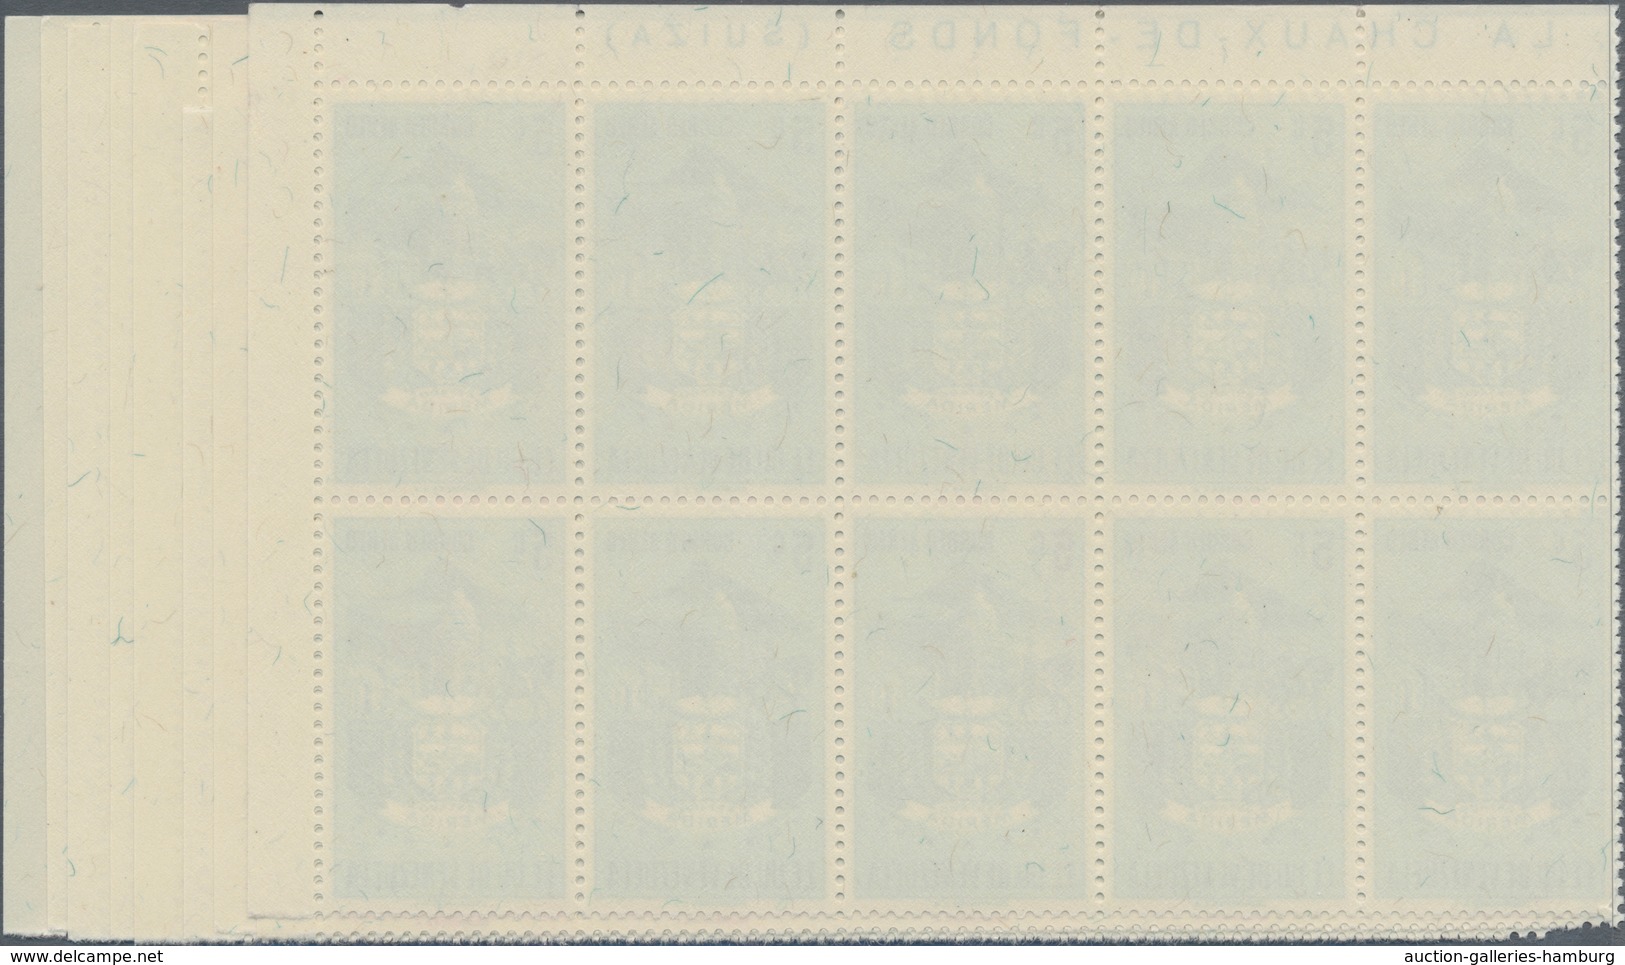 Venezuela: 1953, Coat Of Arms 'MERIDA‘ Airmail Stamps Complete Set Of Nine In Blocks Of Ten From Upp - Venezuela